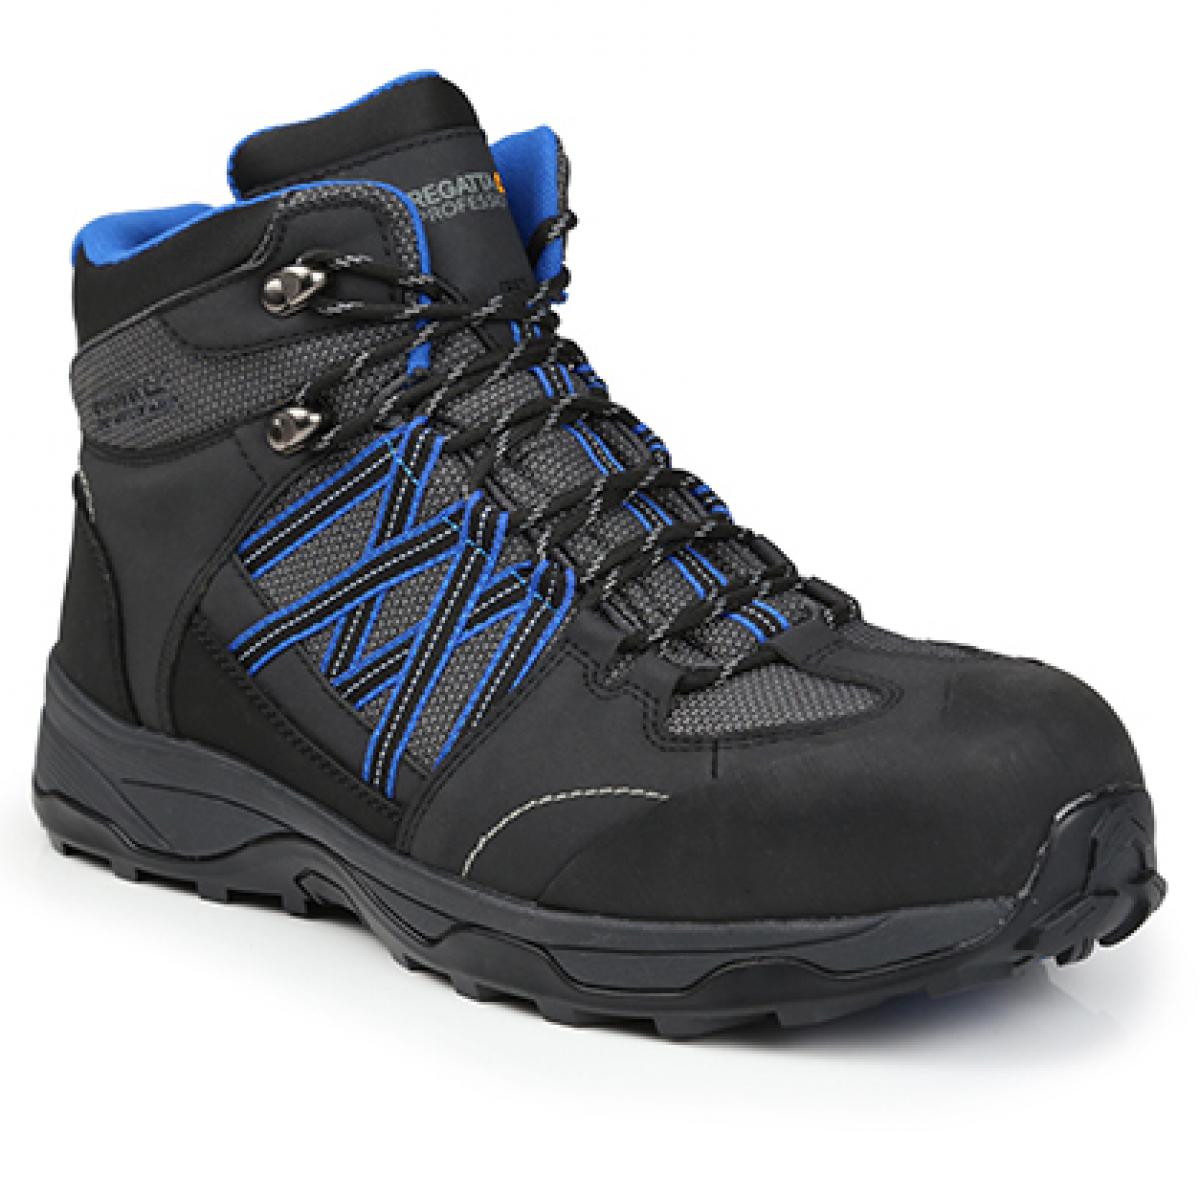 Hersteller: Regatta Safety Footwear Herstellernummer: TRK202 Artikelbezeichnung: Claystone S3 Safety Hiker - Sicherheitsschuhe Farbe: Briar/Oxford Blue